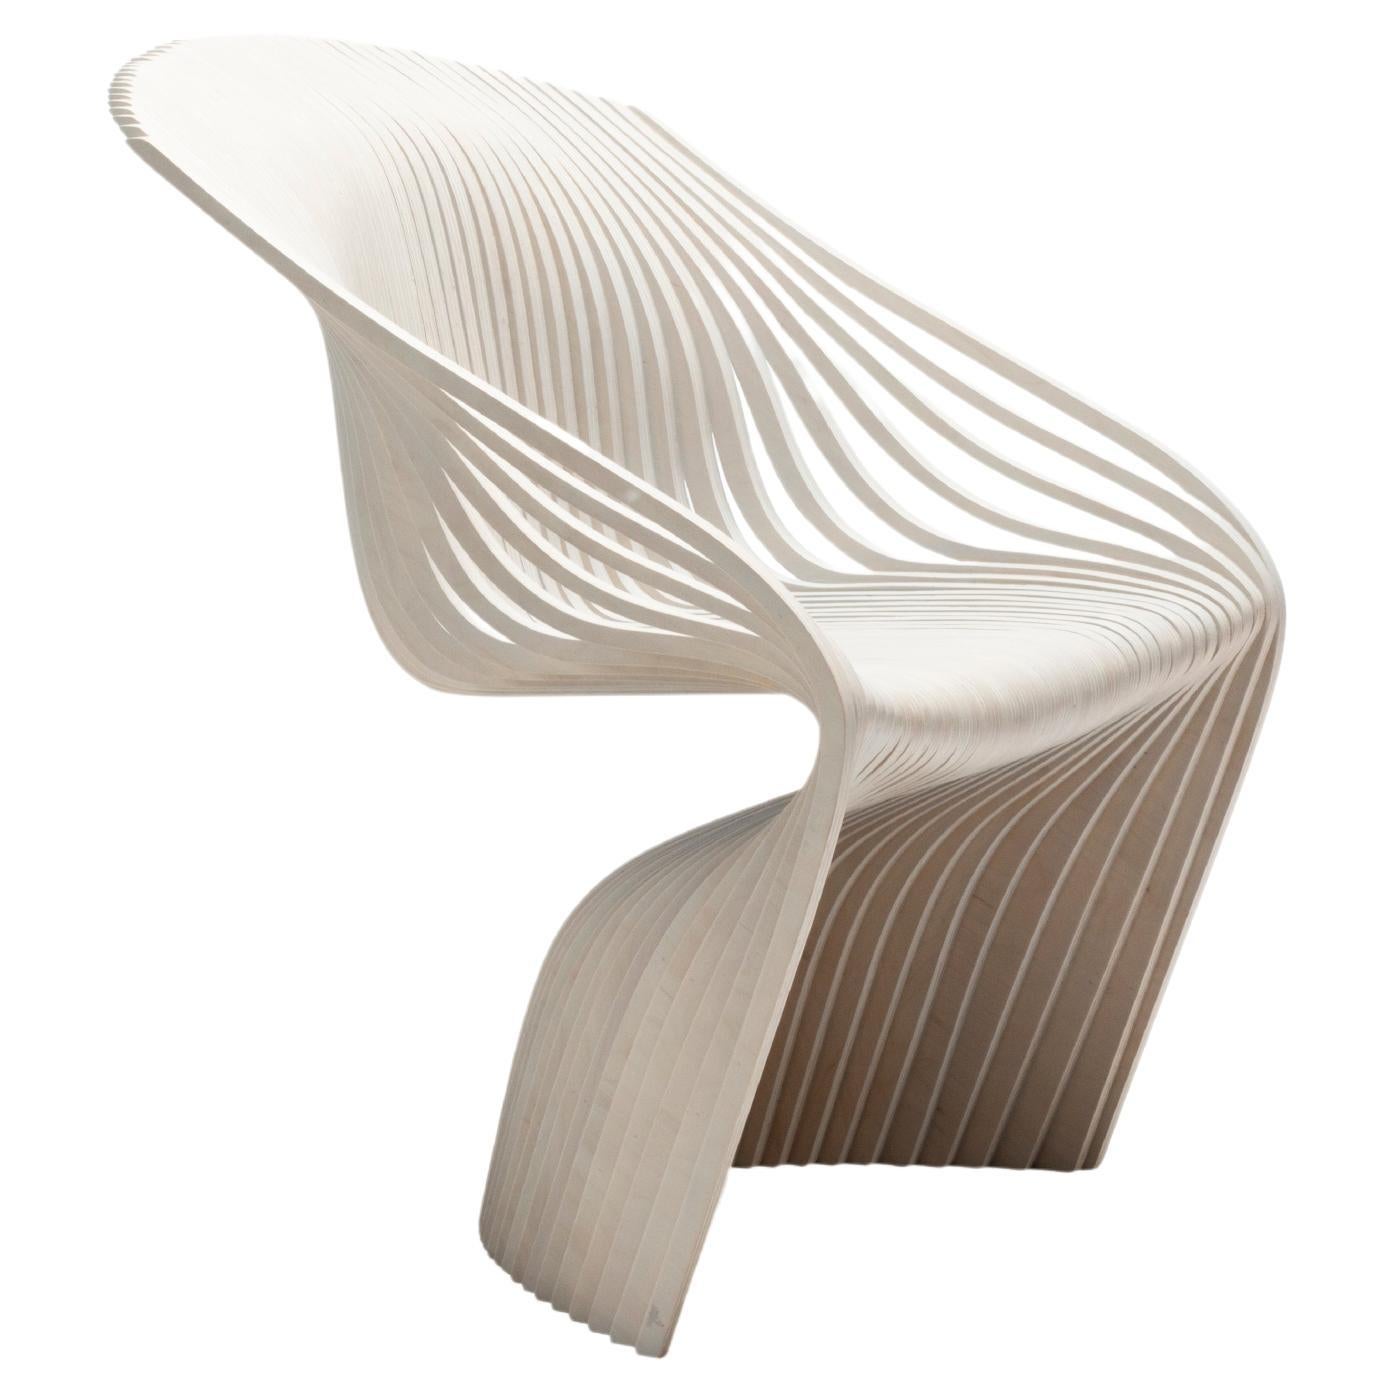 Chaise Aida de Piegatto, une chaise contemporaine sculpturale 